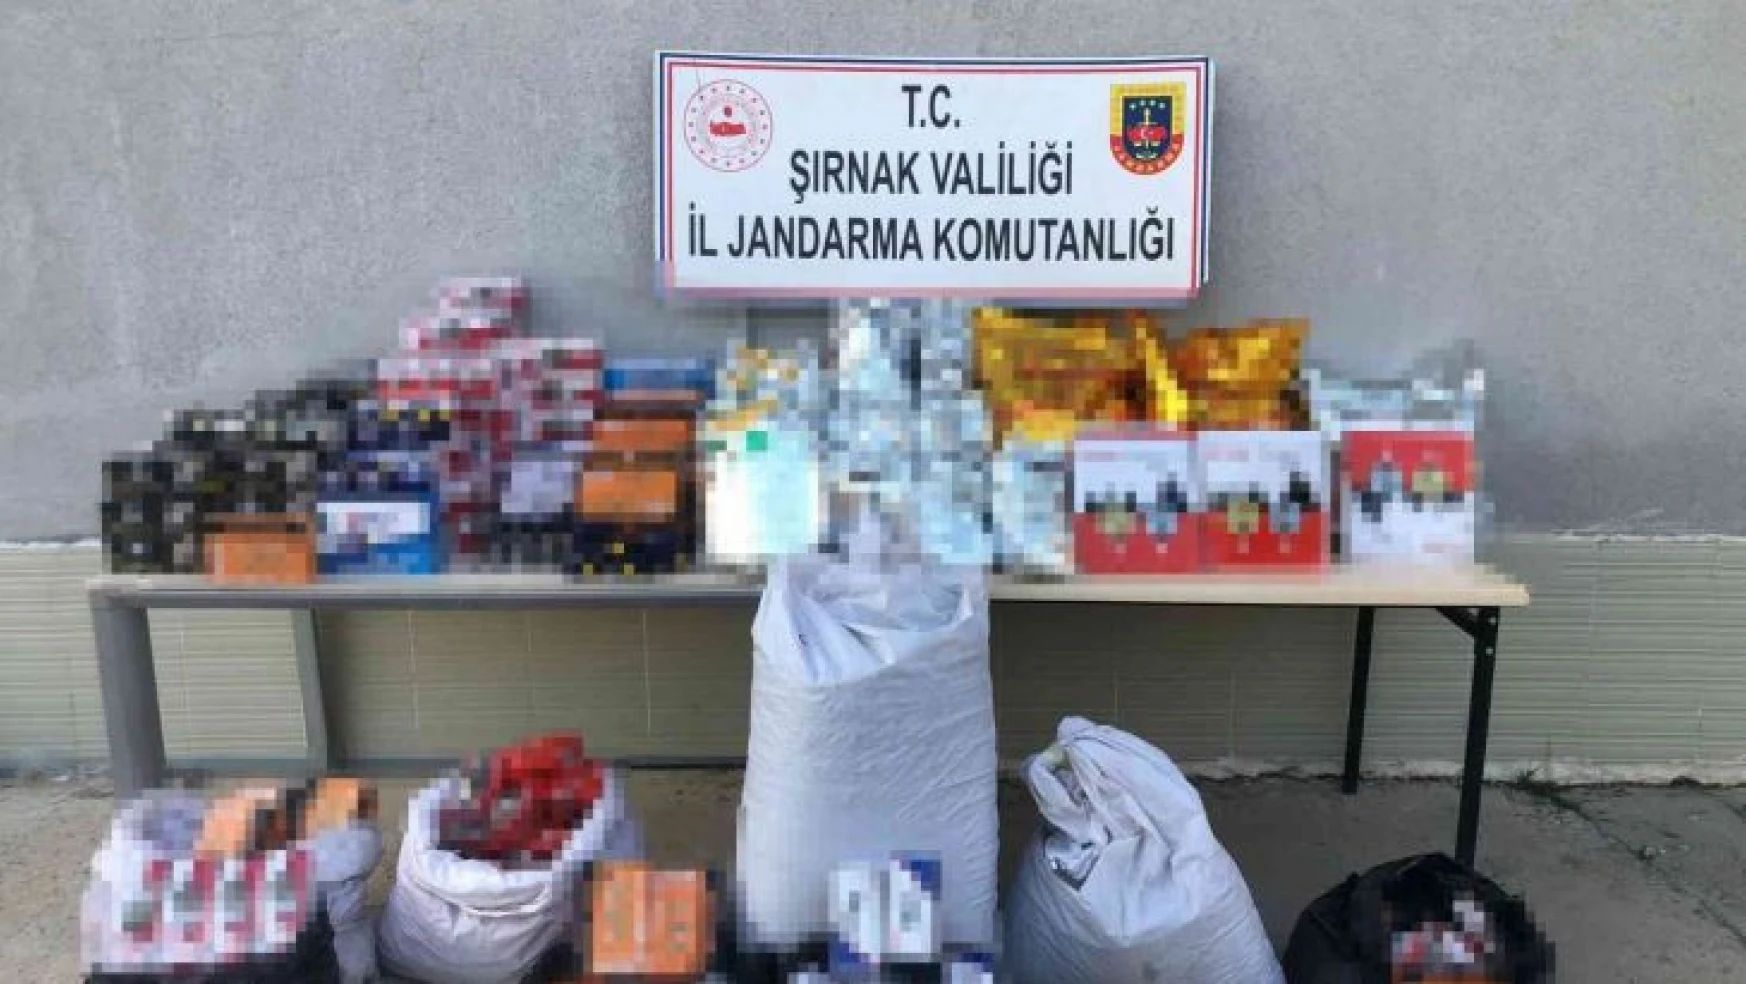 Şırnak'ta 10 bin paket kaçak sigara ele geçirildi: 65 gözaltı